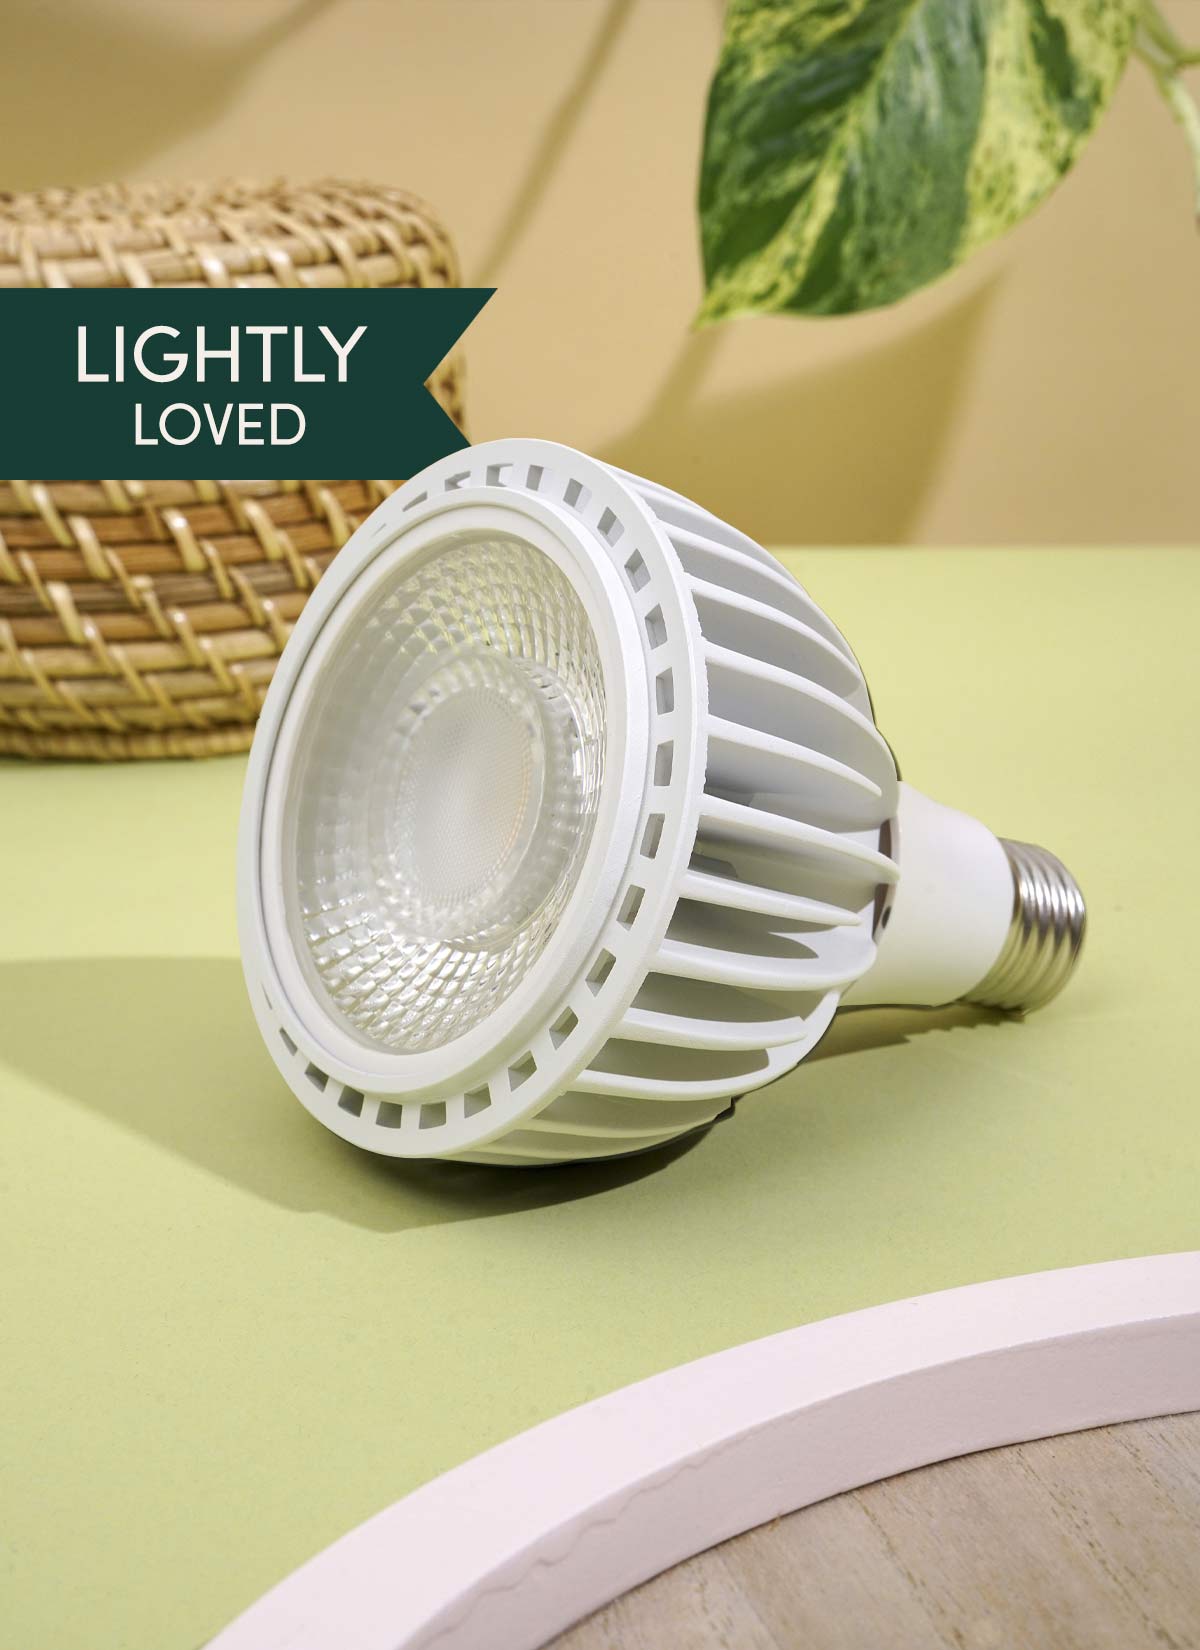 Lampe de culture à LED Vita ™ remise à neuf - Légèrement aimée